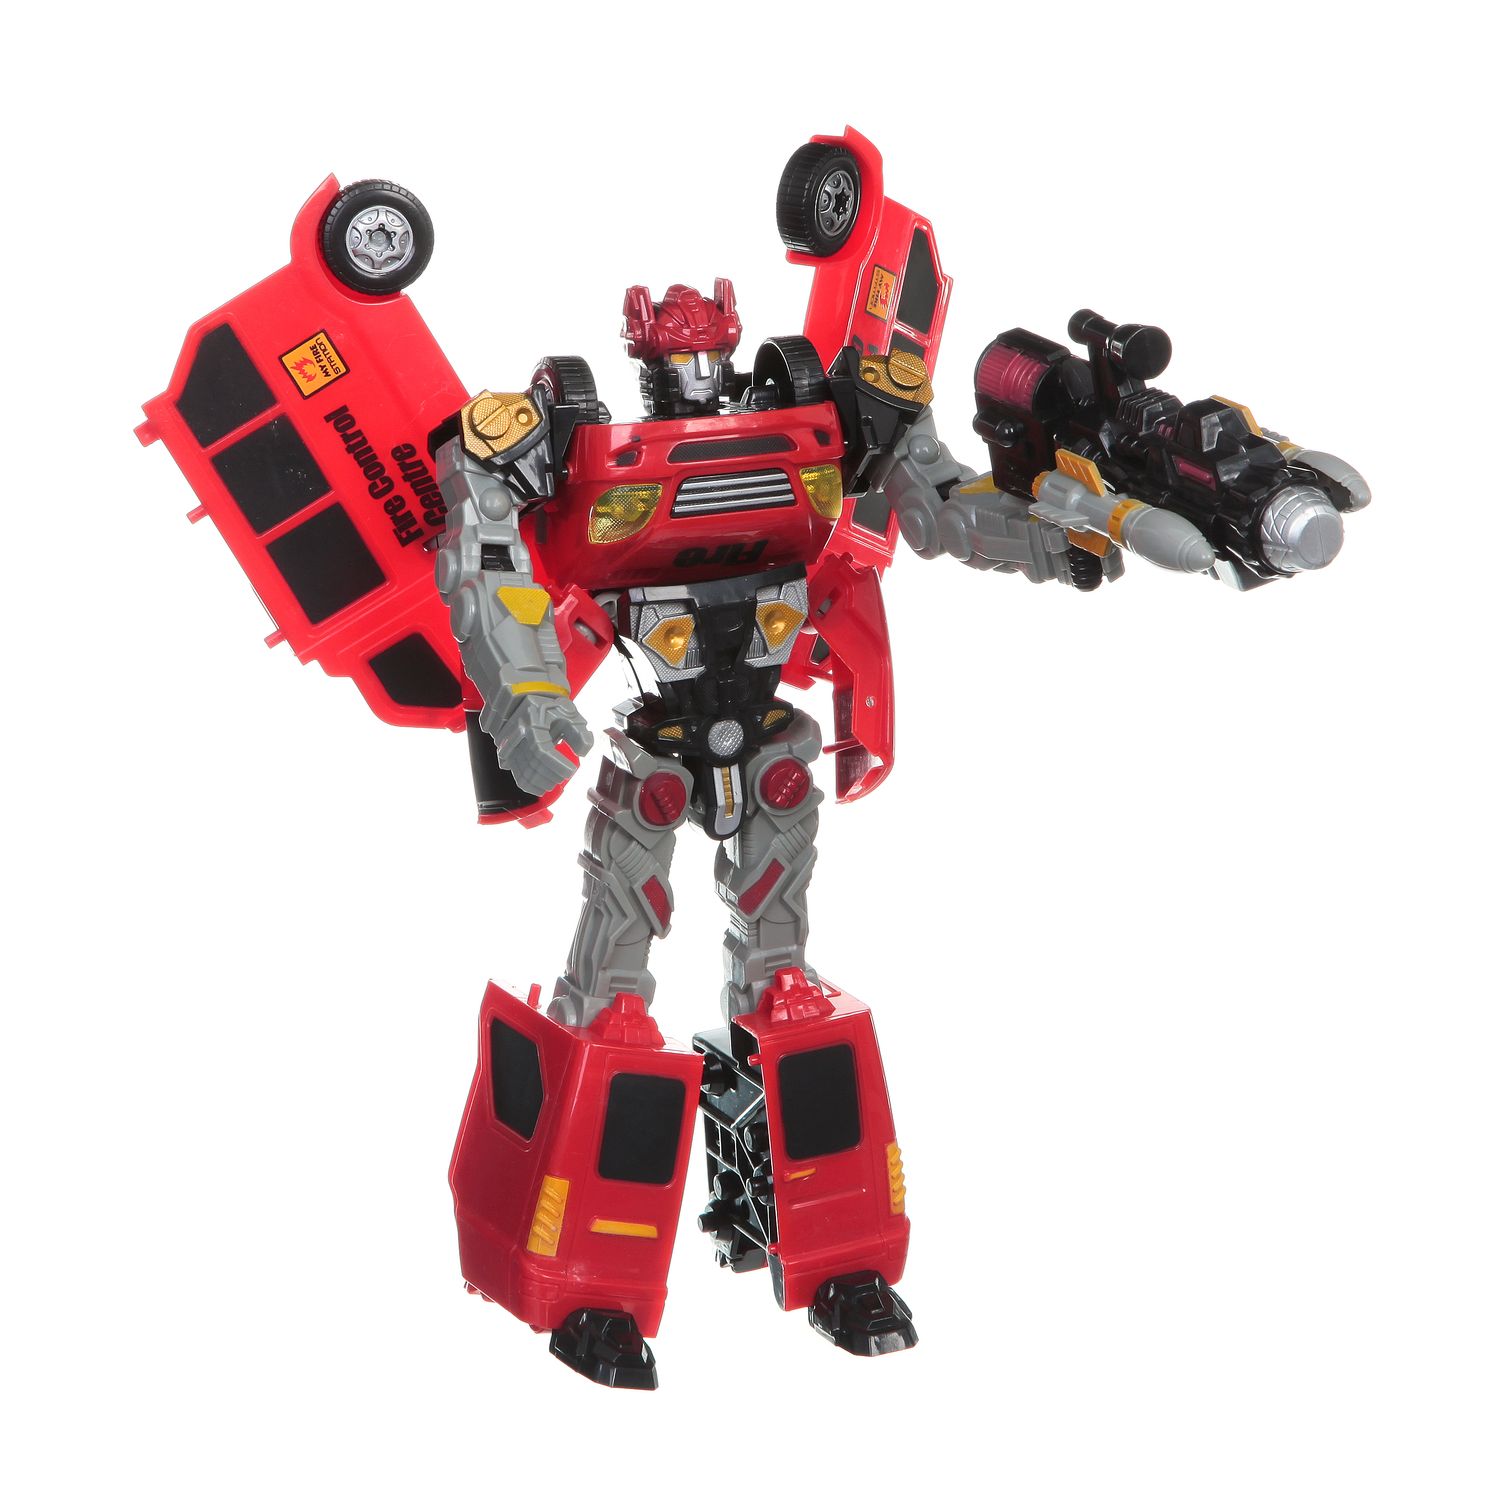 Red transformer. Робот трансформер красный. Игрушка "трансформер", красный. Игрушечные роботы трансформеры. Роботы трансформеры игрушки для мальчиков.